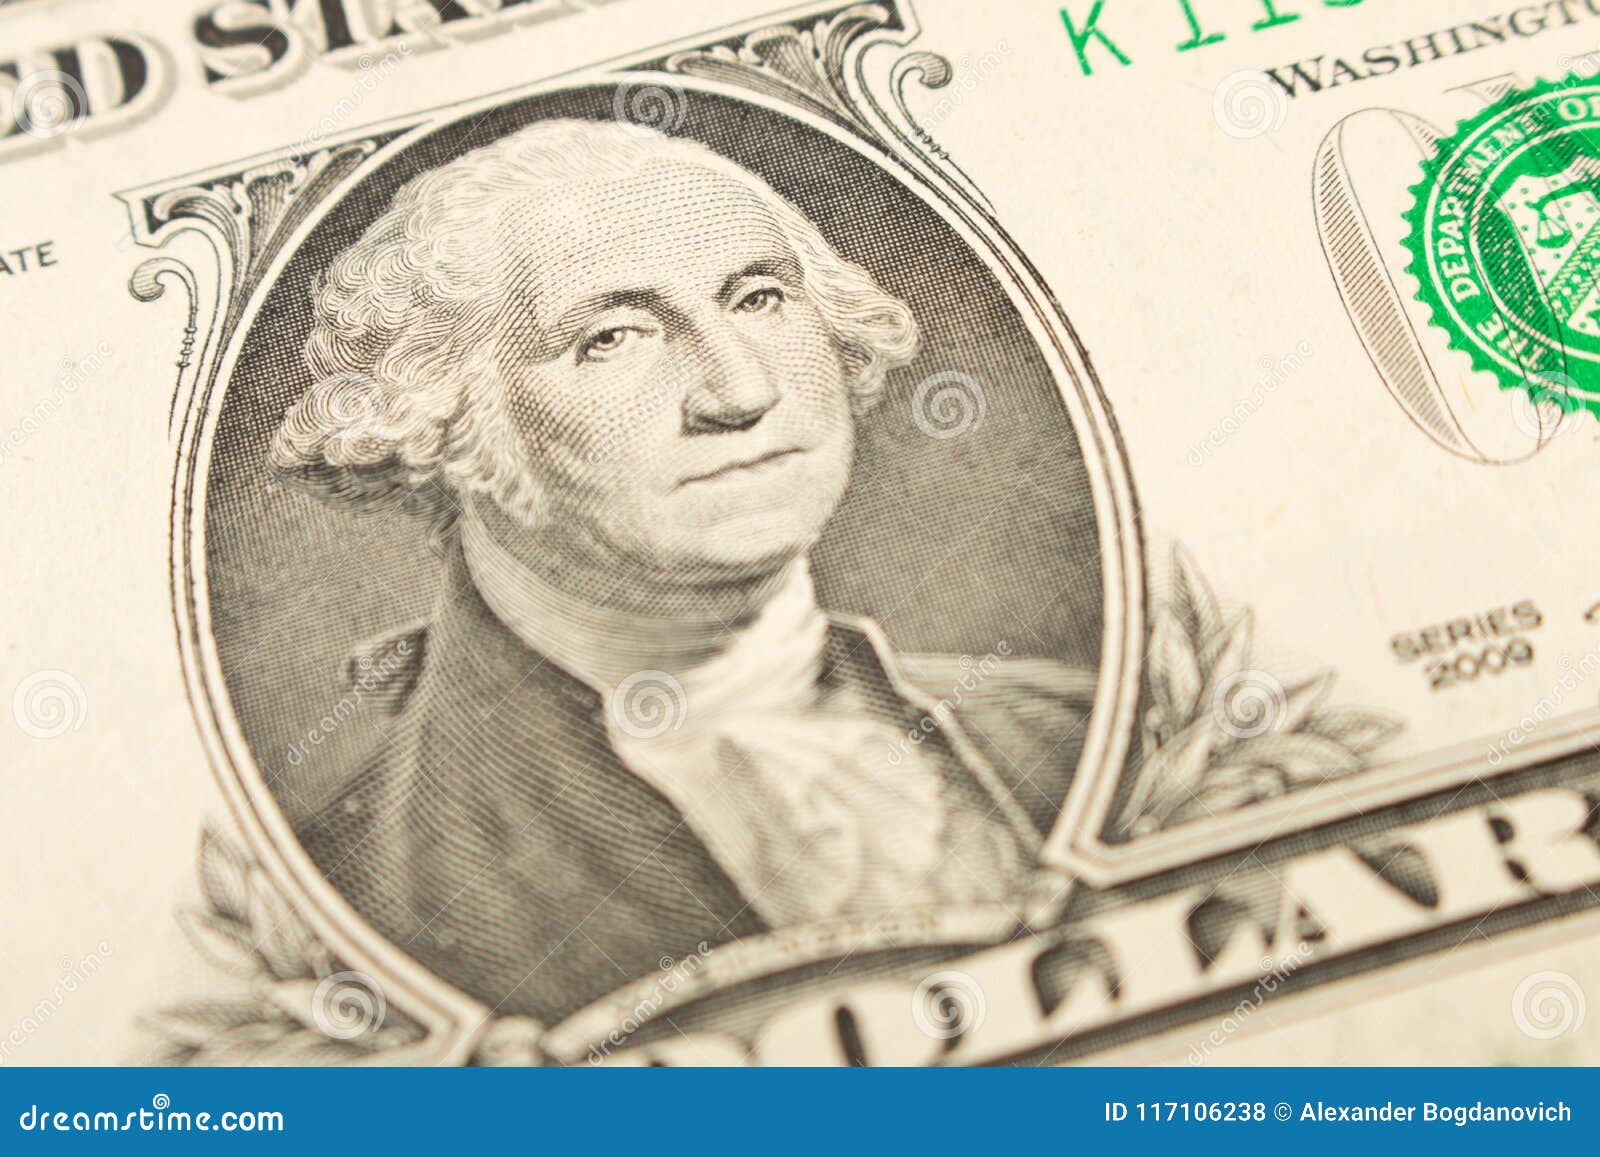 Джефферсон купюра. Джордж Вашингтон купюра 100. Джордж Вашингтон на купюре. Джордж Вашингтон на купюре 1 доллар. Портрет Джорджа Вашингтона на купюре.